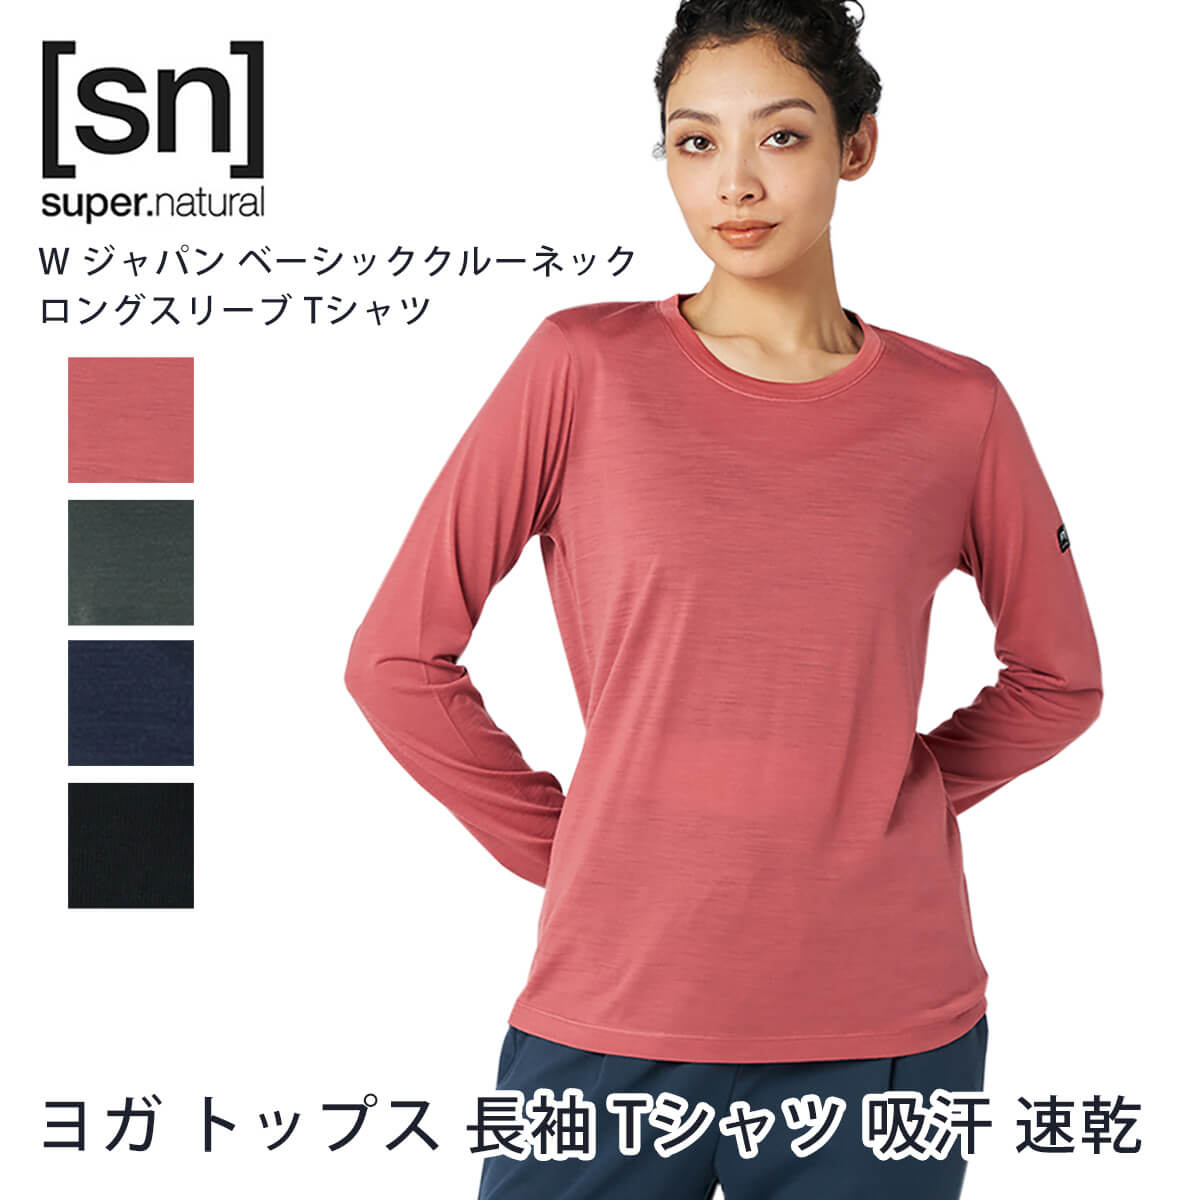 sn] super.natural W ジャパン ベーシッククルーネック ロングスリーブ